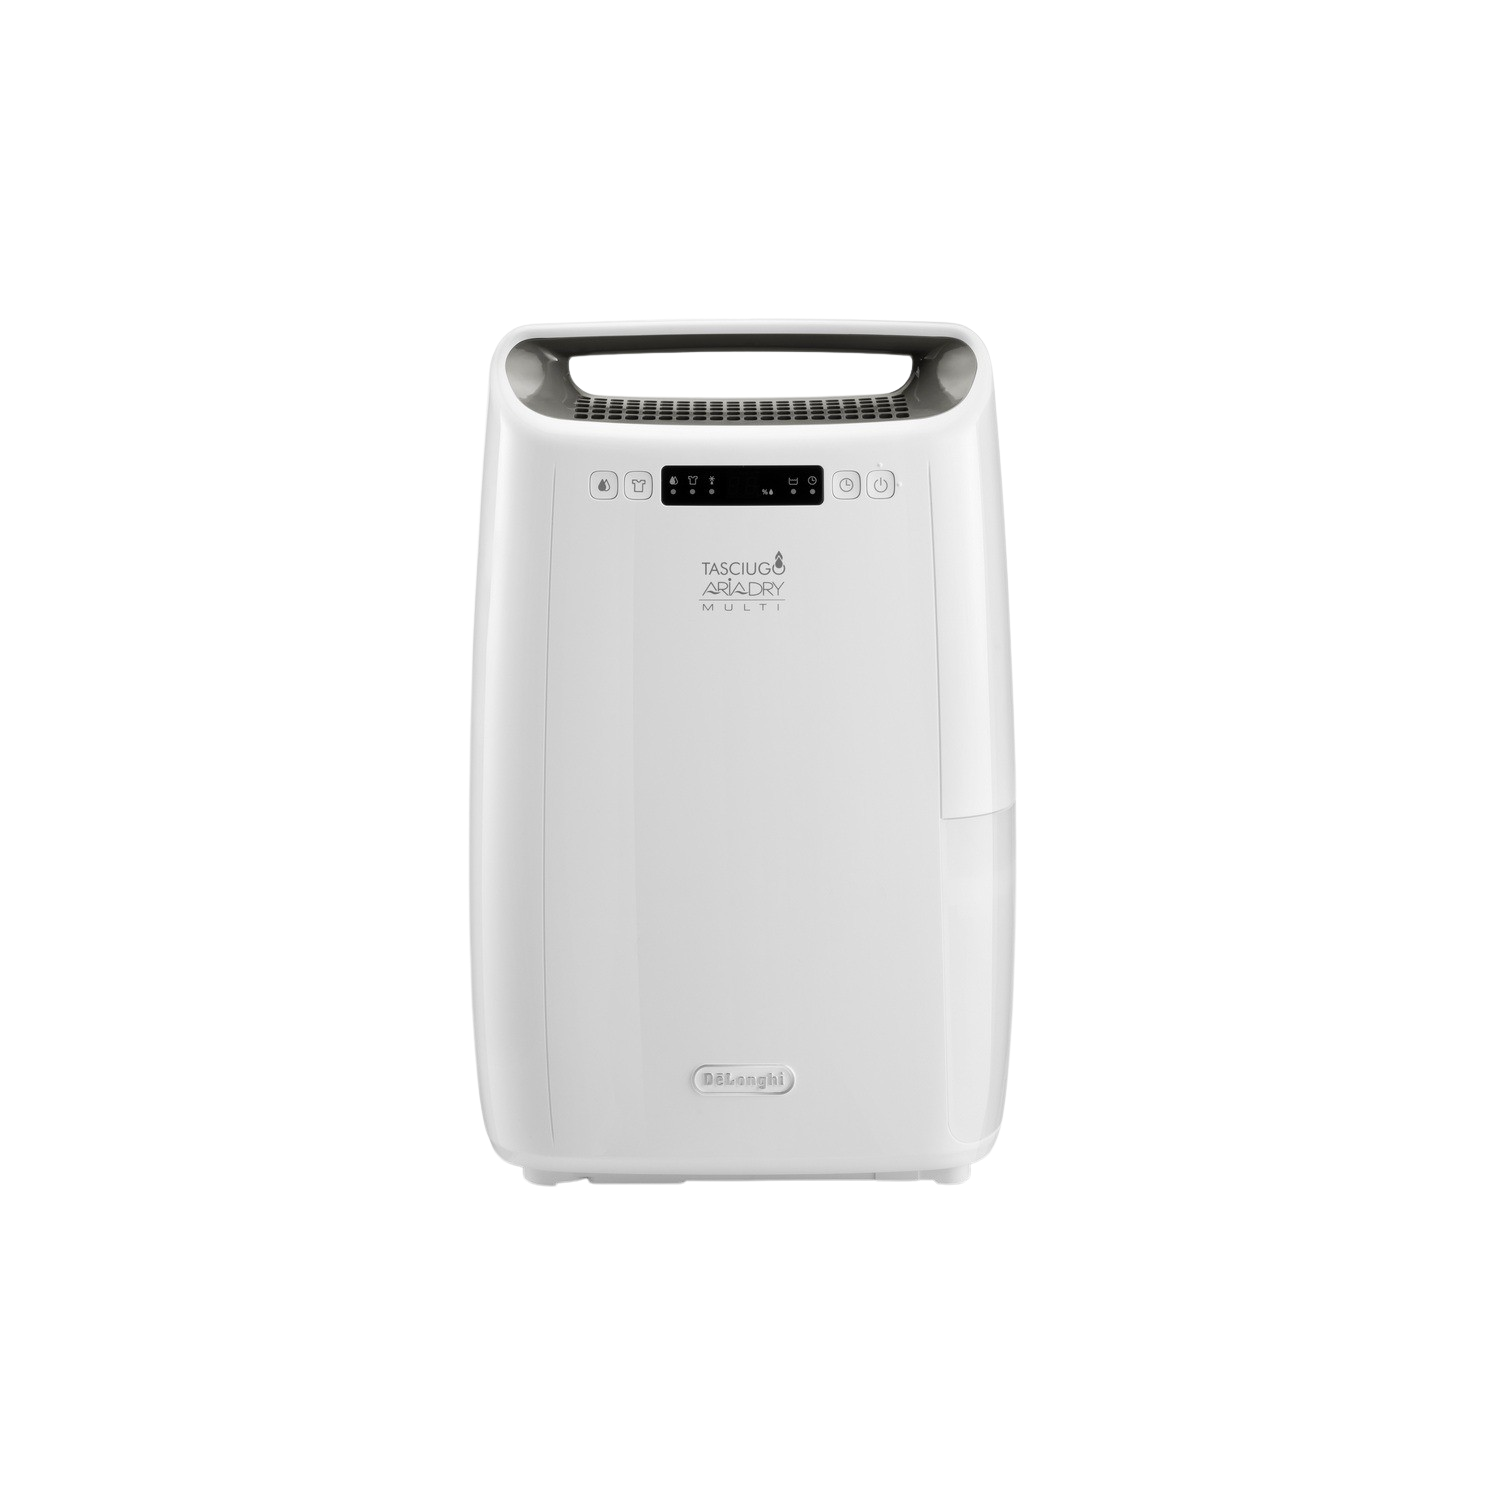 Deshumidificador - De'Longhi Tasciugo Aria Dry Multi DEXD214F, Función Laundry, Anticongelante, LCD, Blanco